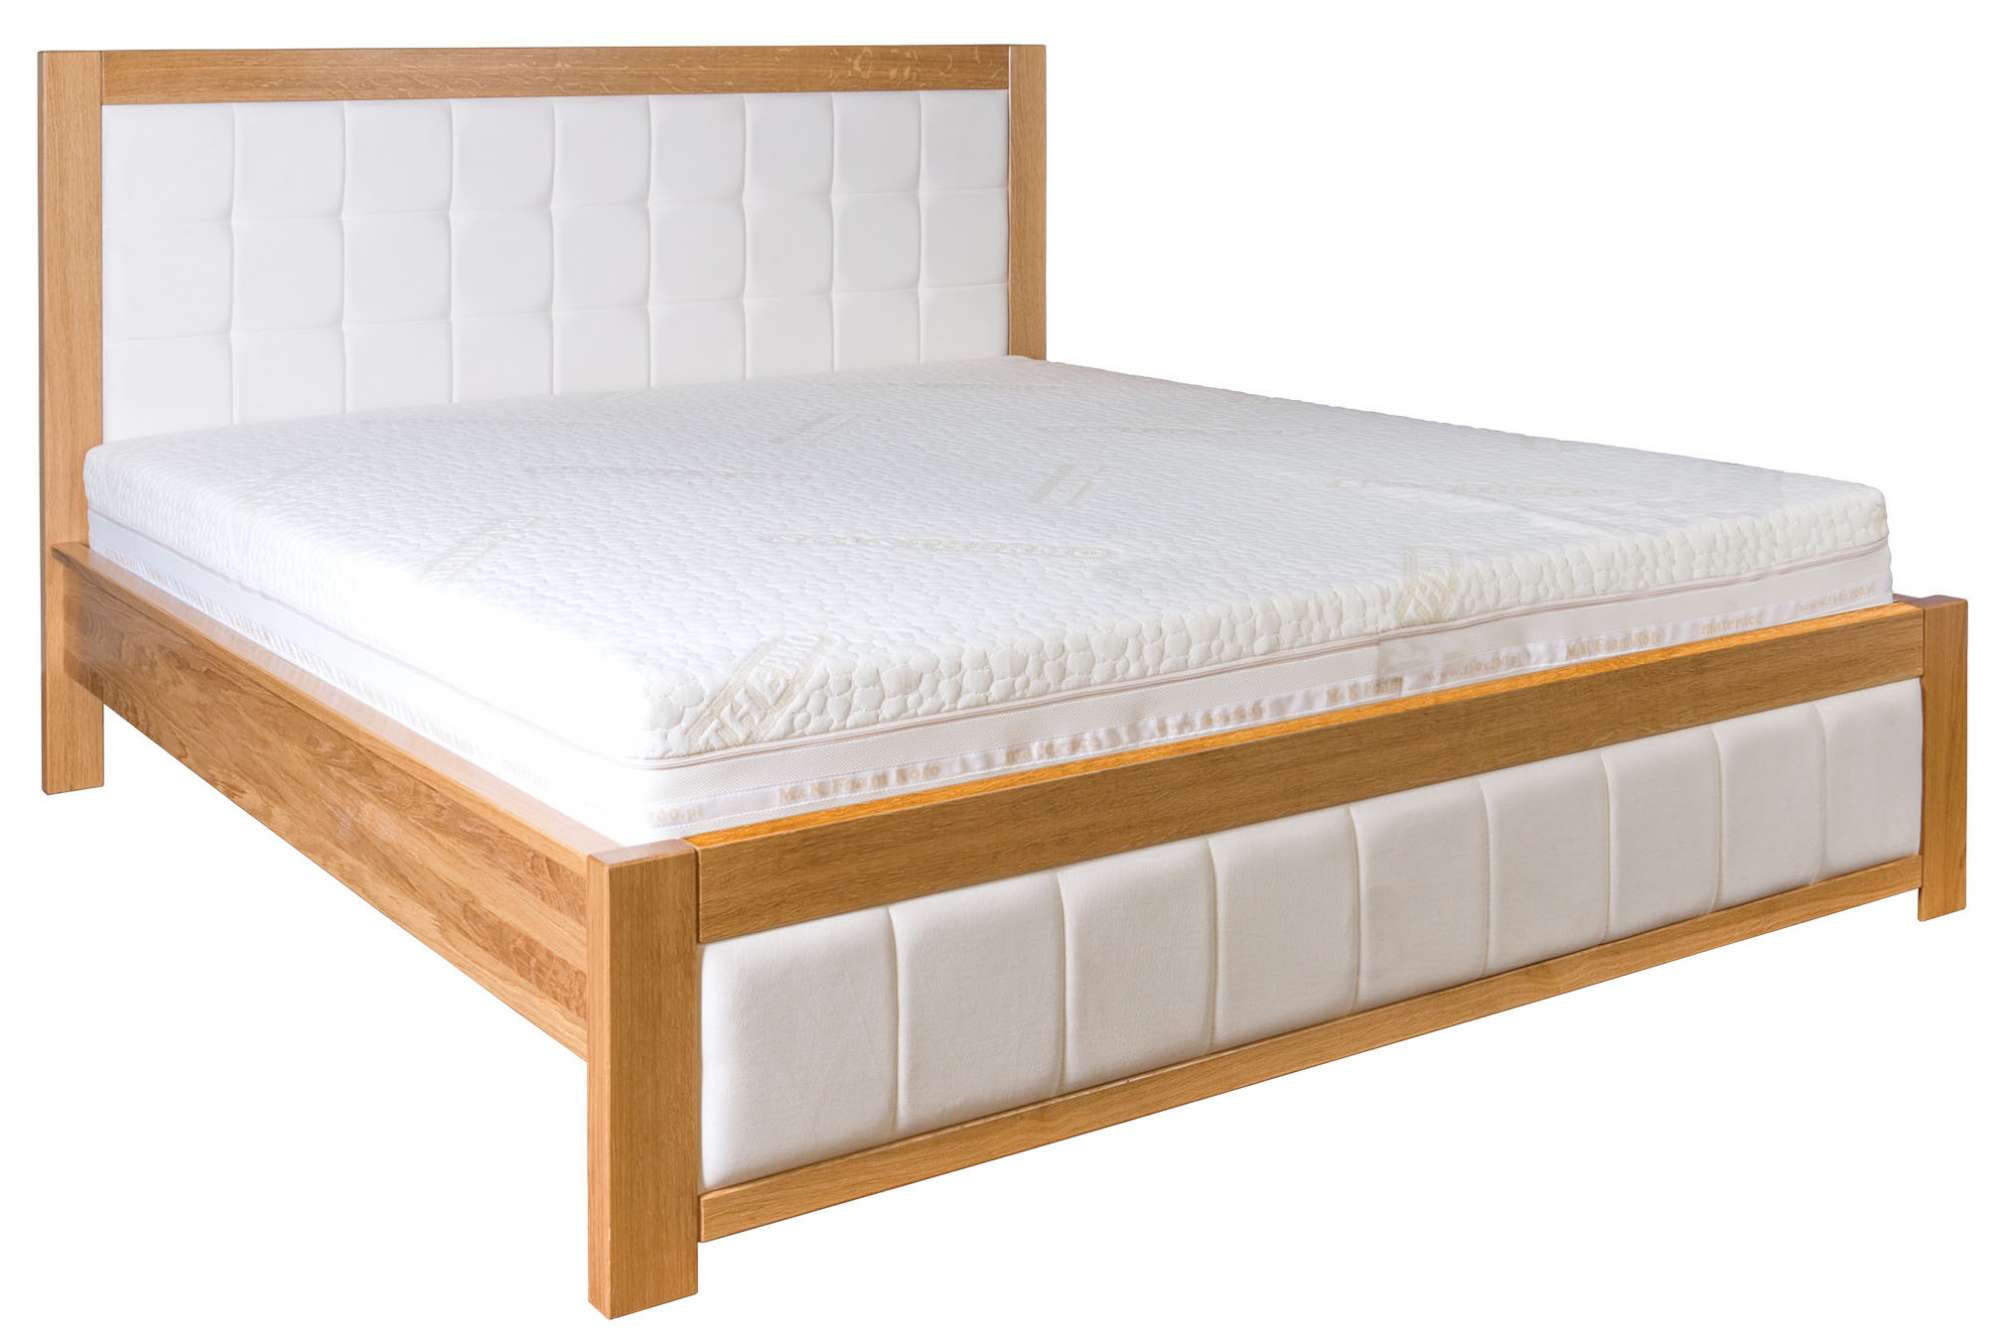 Dřevěná manželská postel VIP Dub 214 s kvalitním čalouněním